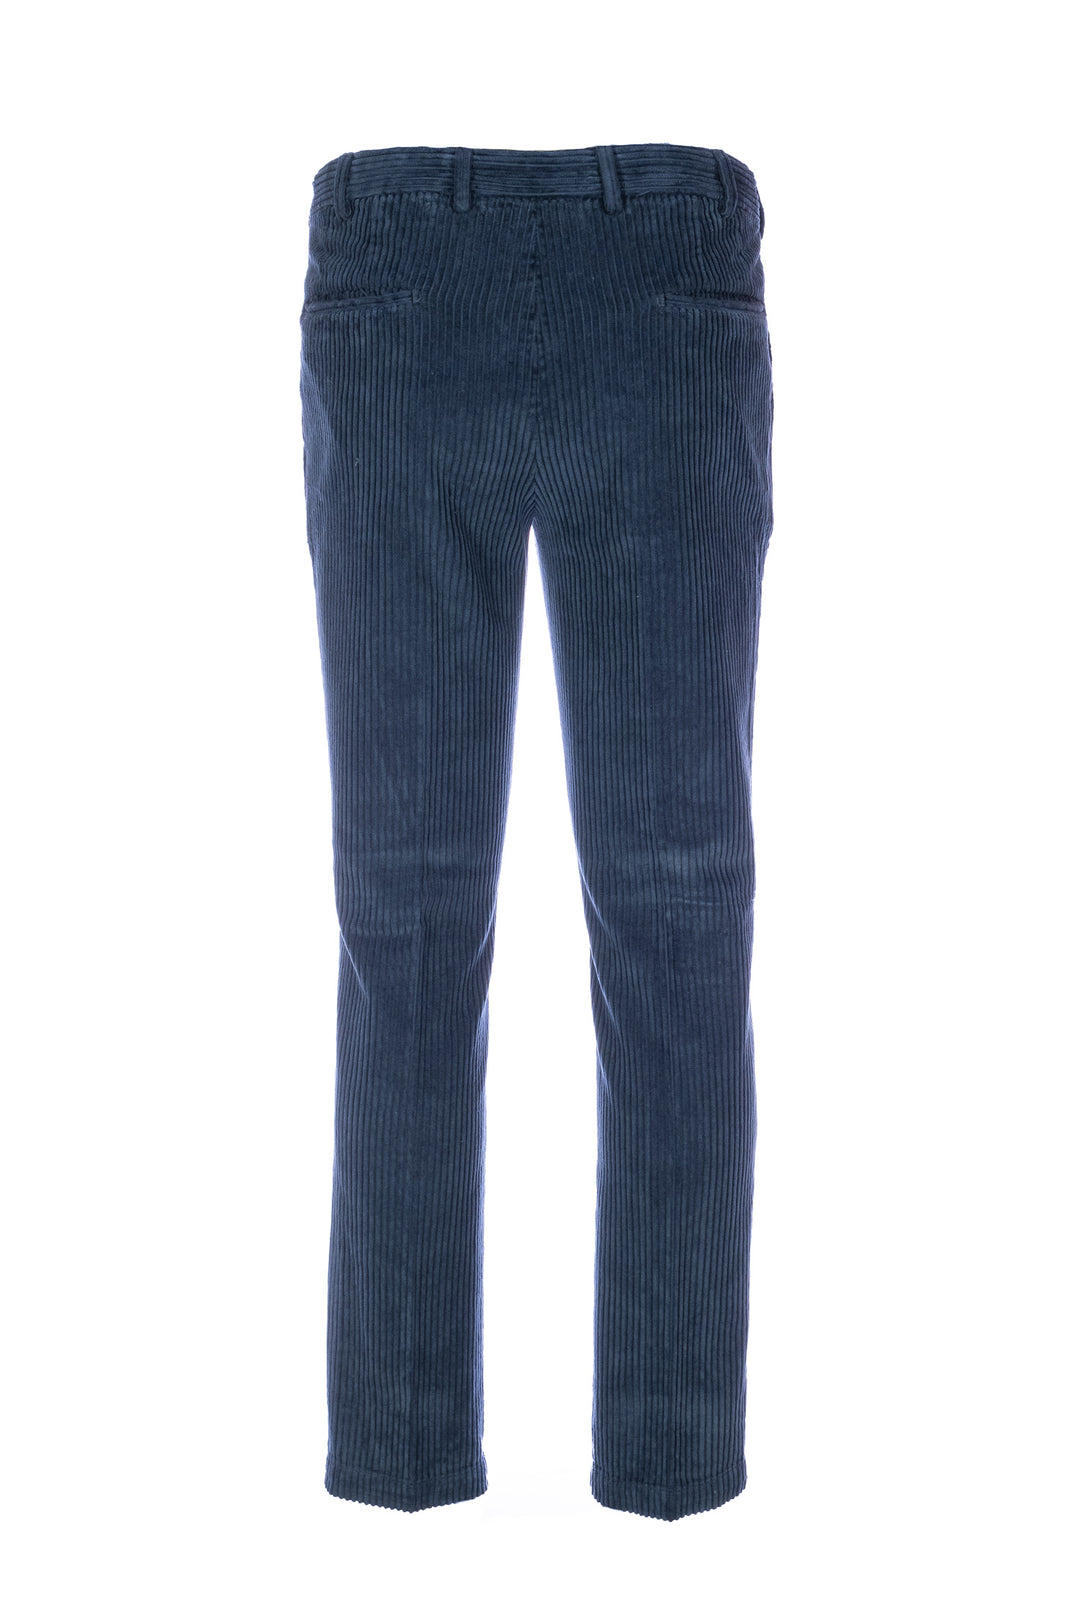 DEVORE Pantalone blu in velluto rocciatore con vita elastica - Mancinelli 1954